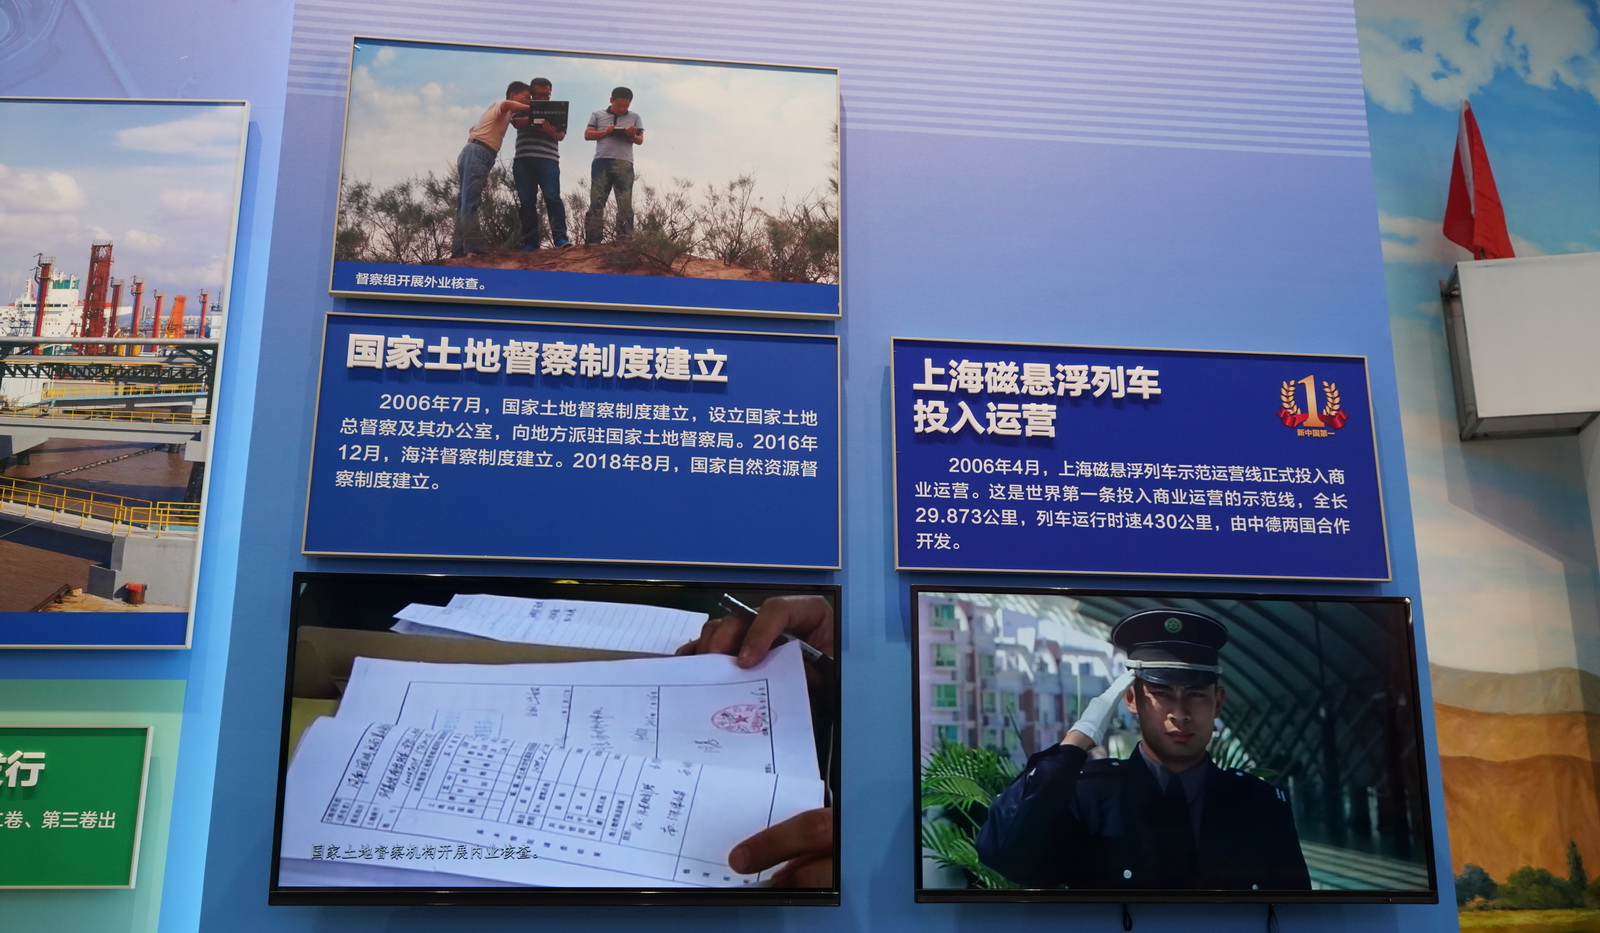 上海磁懸浮列車投入運營﹔國家土地監察制度建立